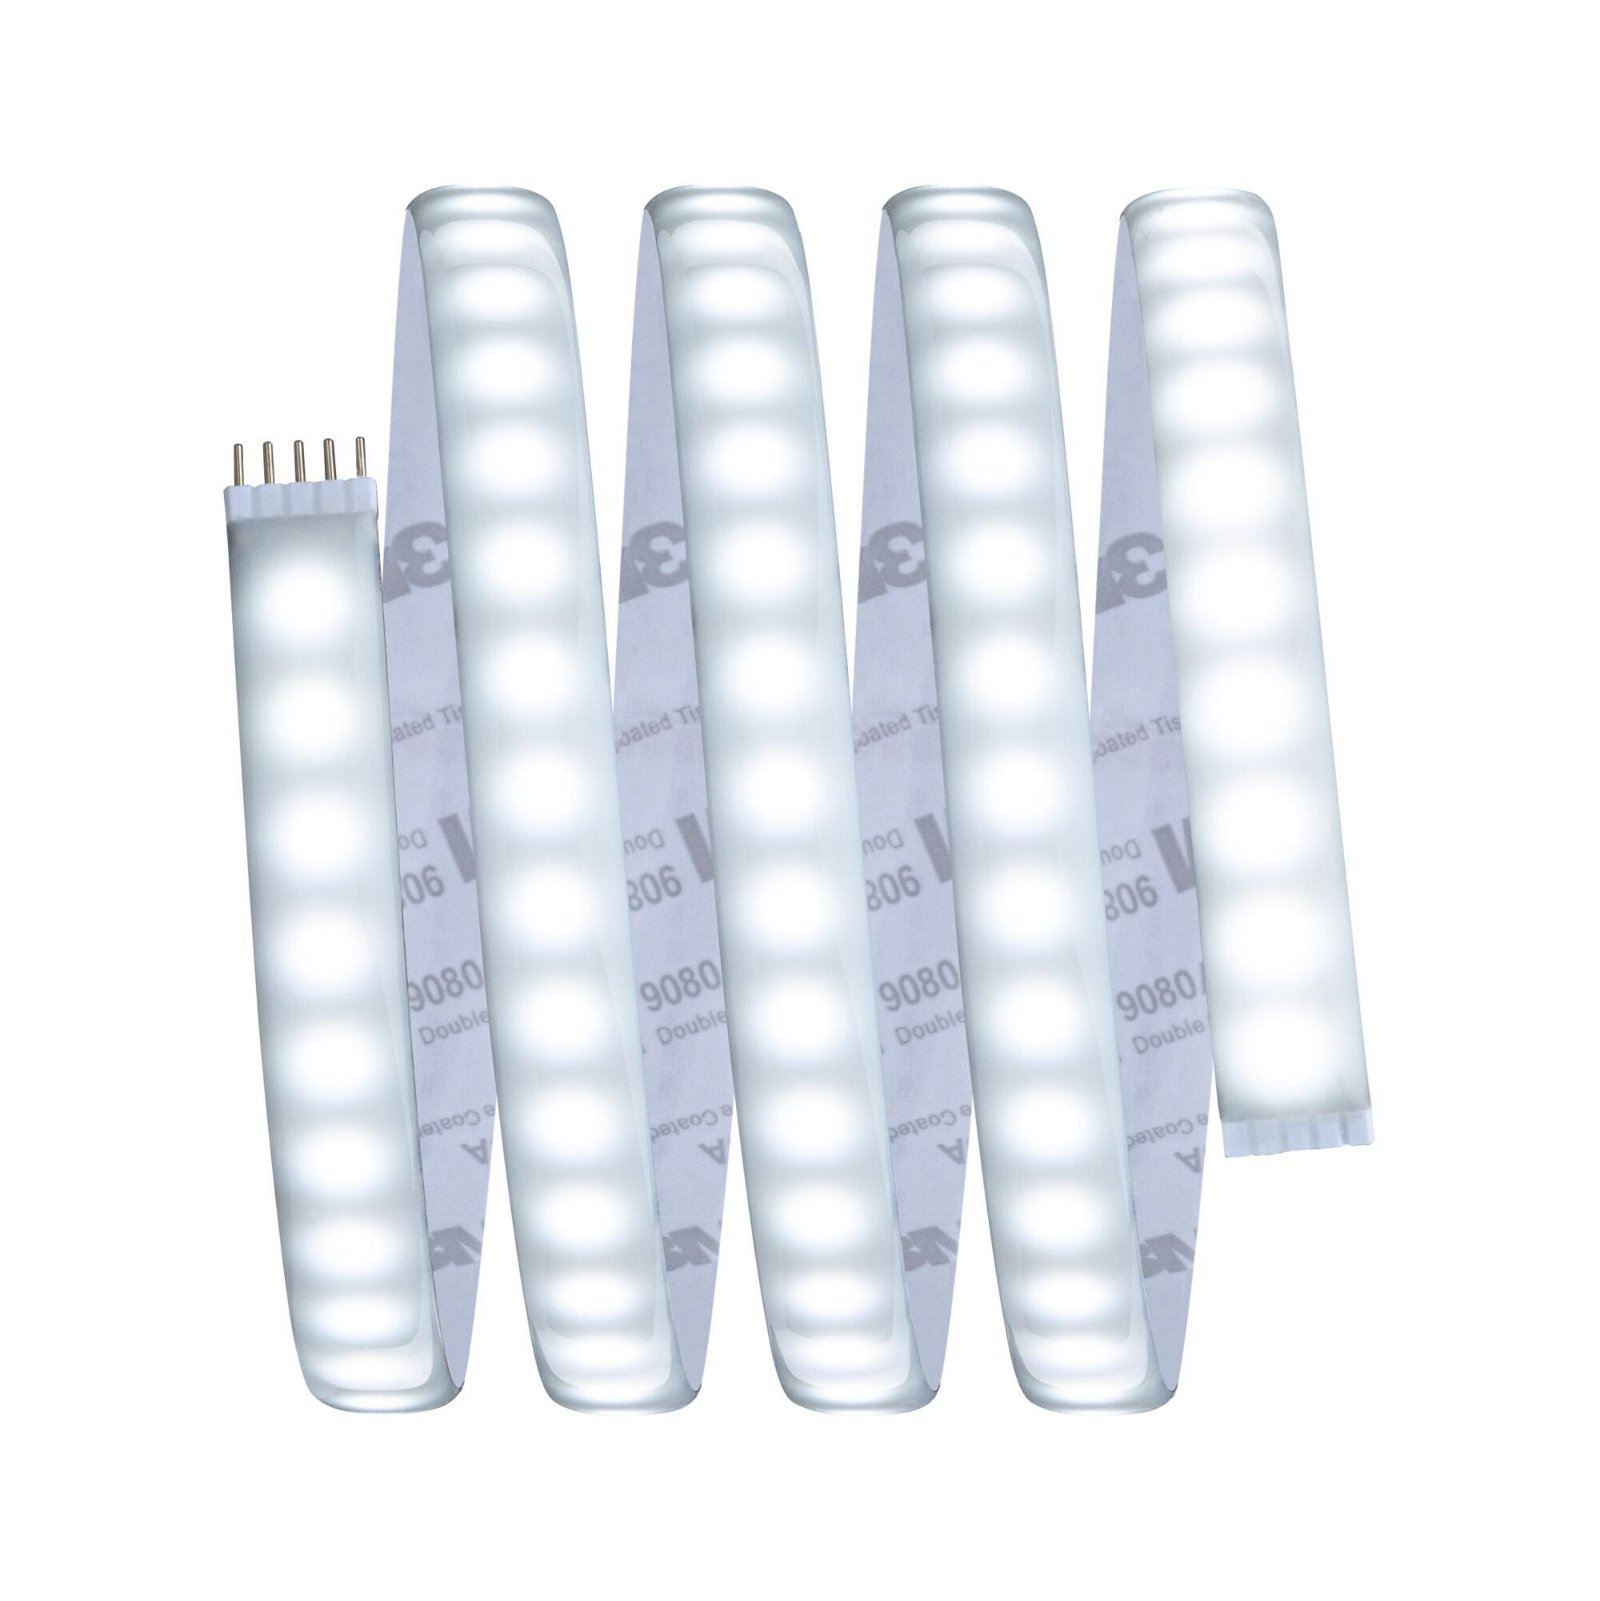 PAULMANN LICHT MaxLED 1000 (70531) Strips White LED Tunable